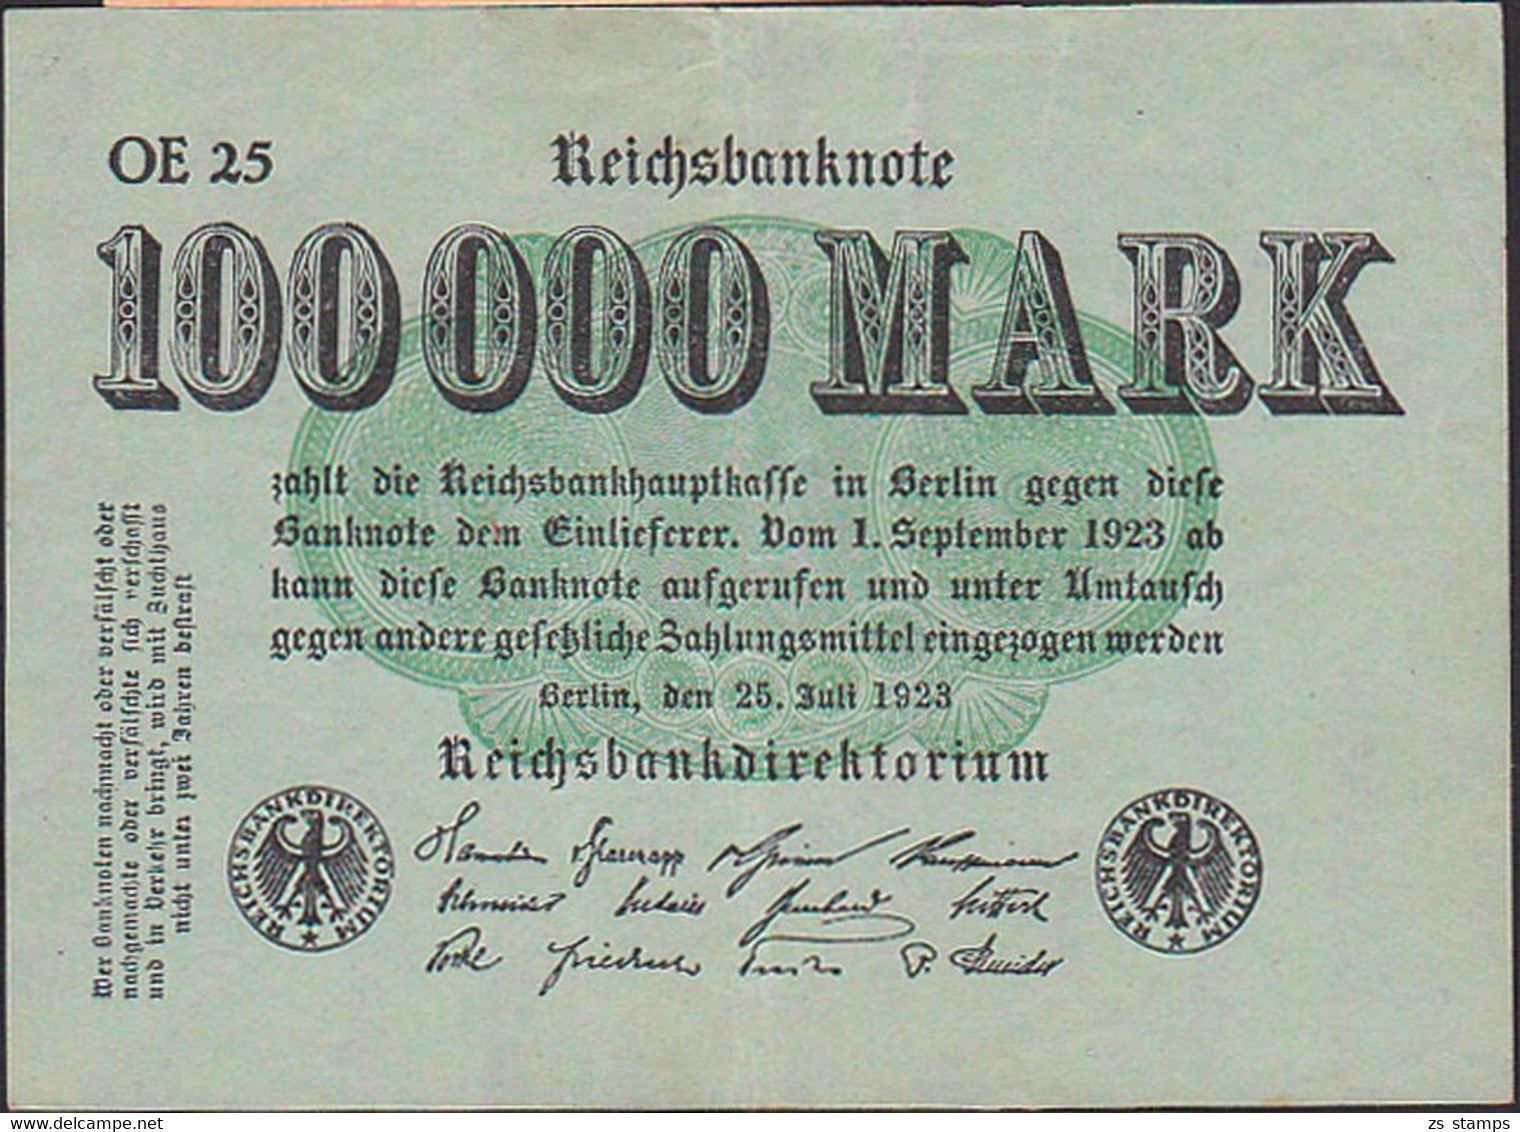 Inflaschein 100 000 Millionen Mark Serie OE 25, Deutsches Reich Inflation - 1 Mio. Mark